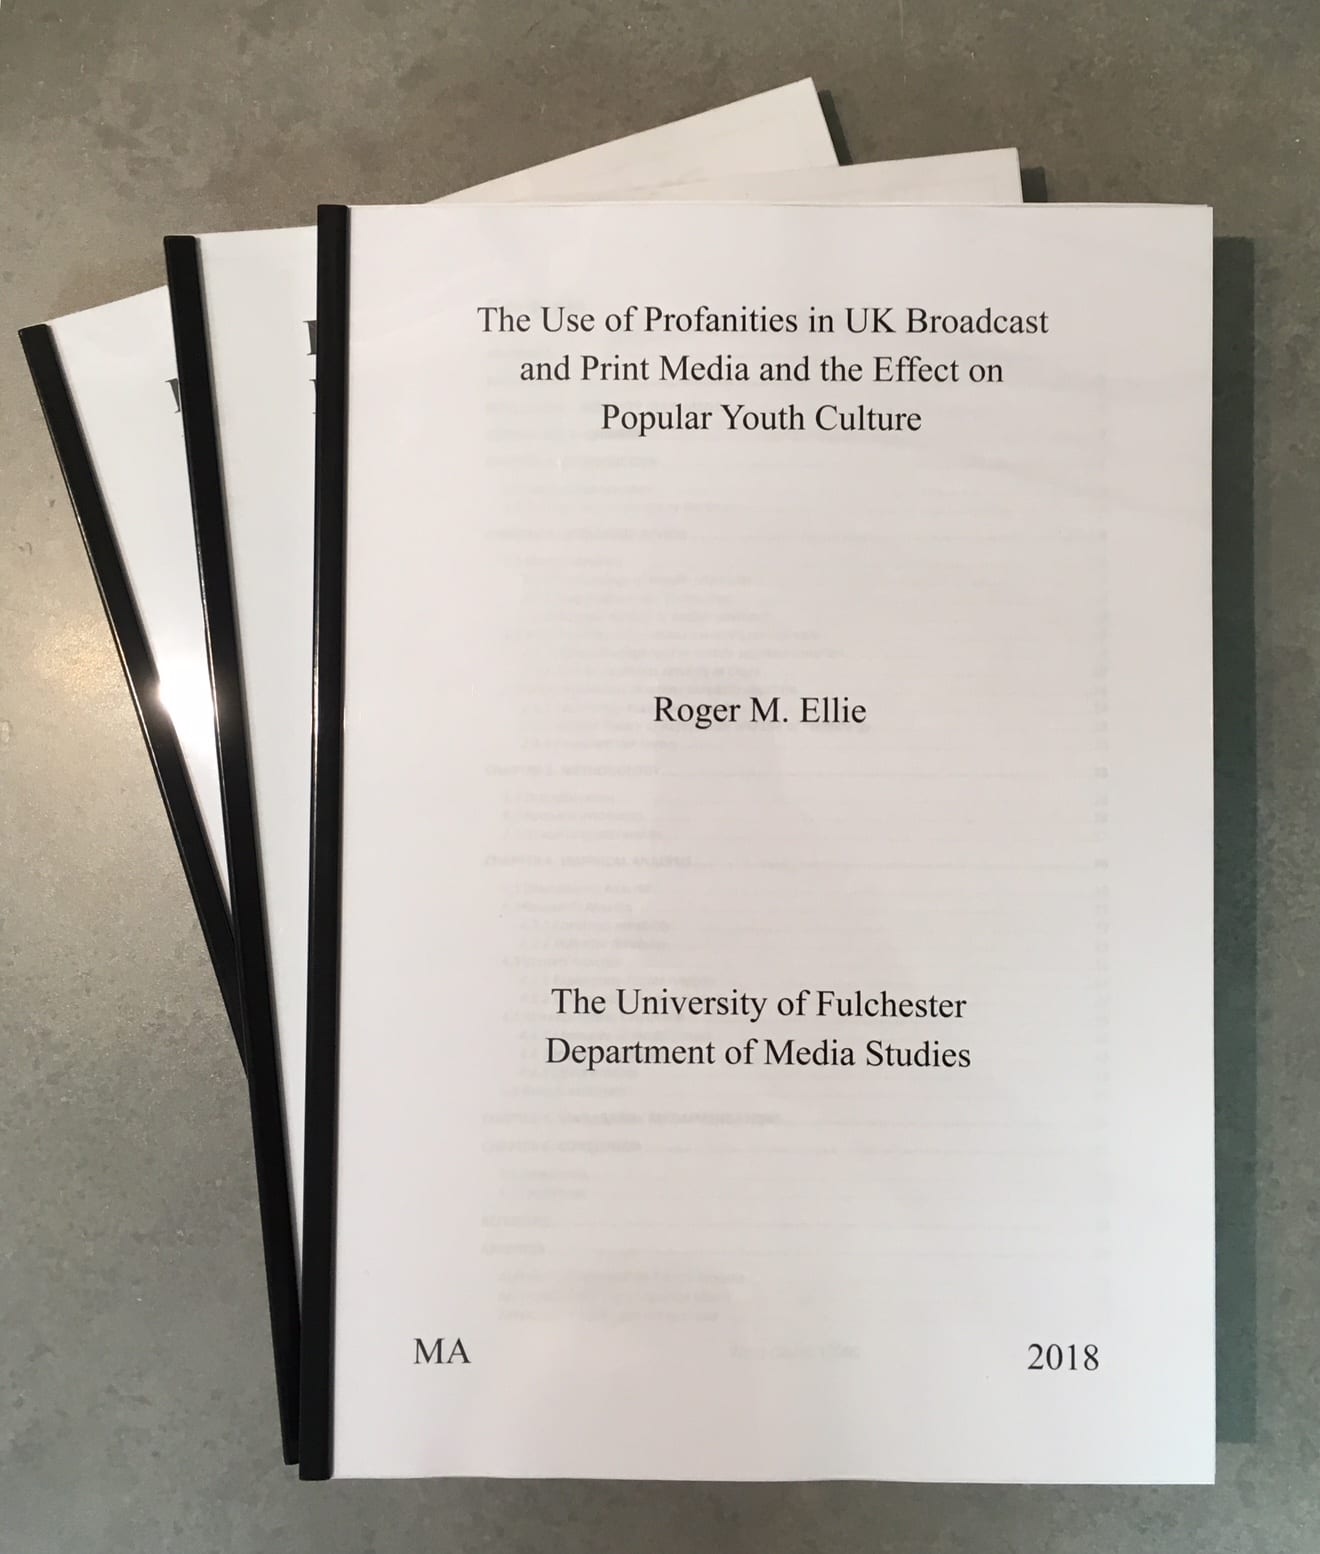 thesis printing and binding